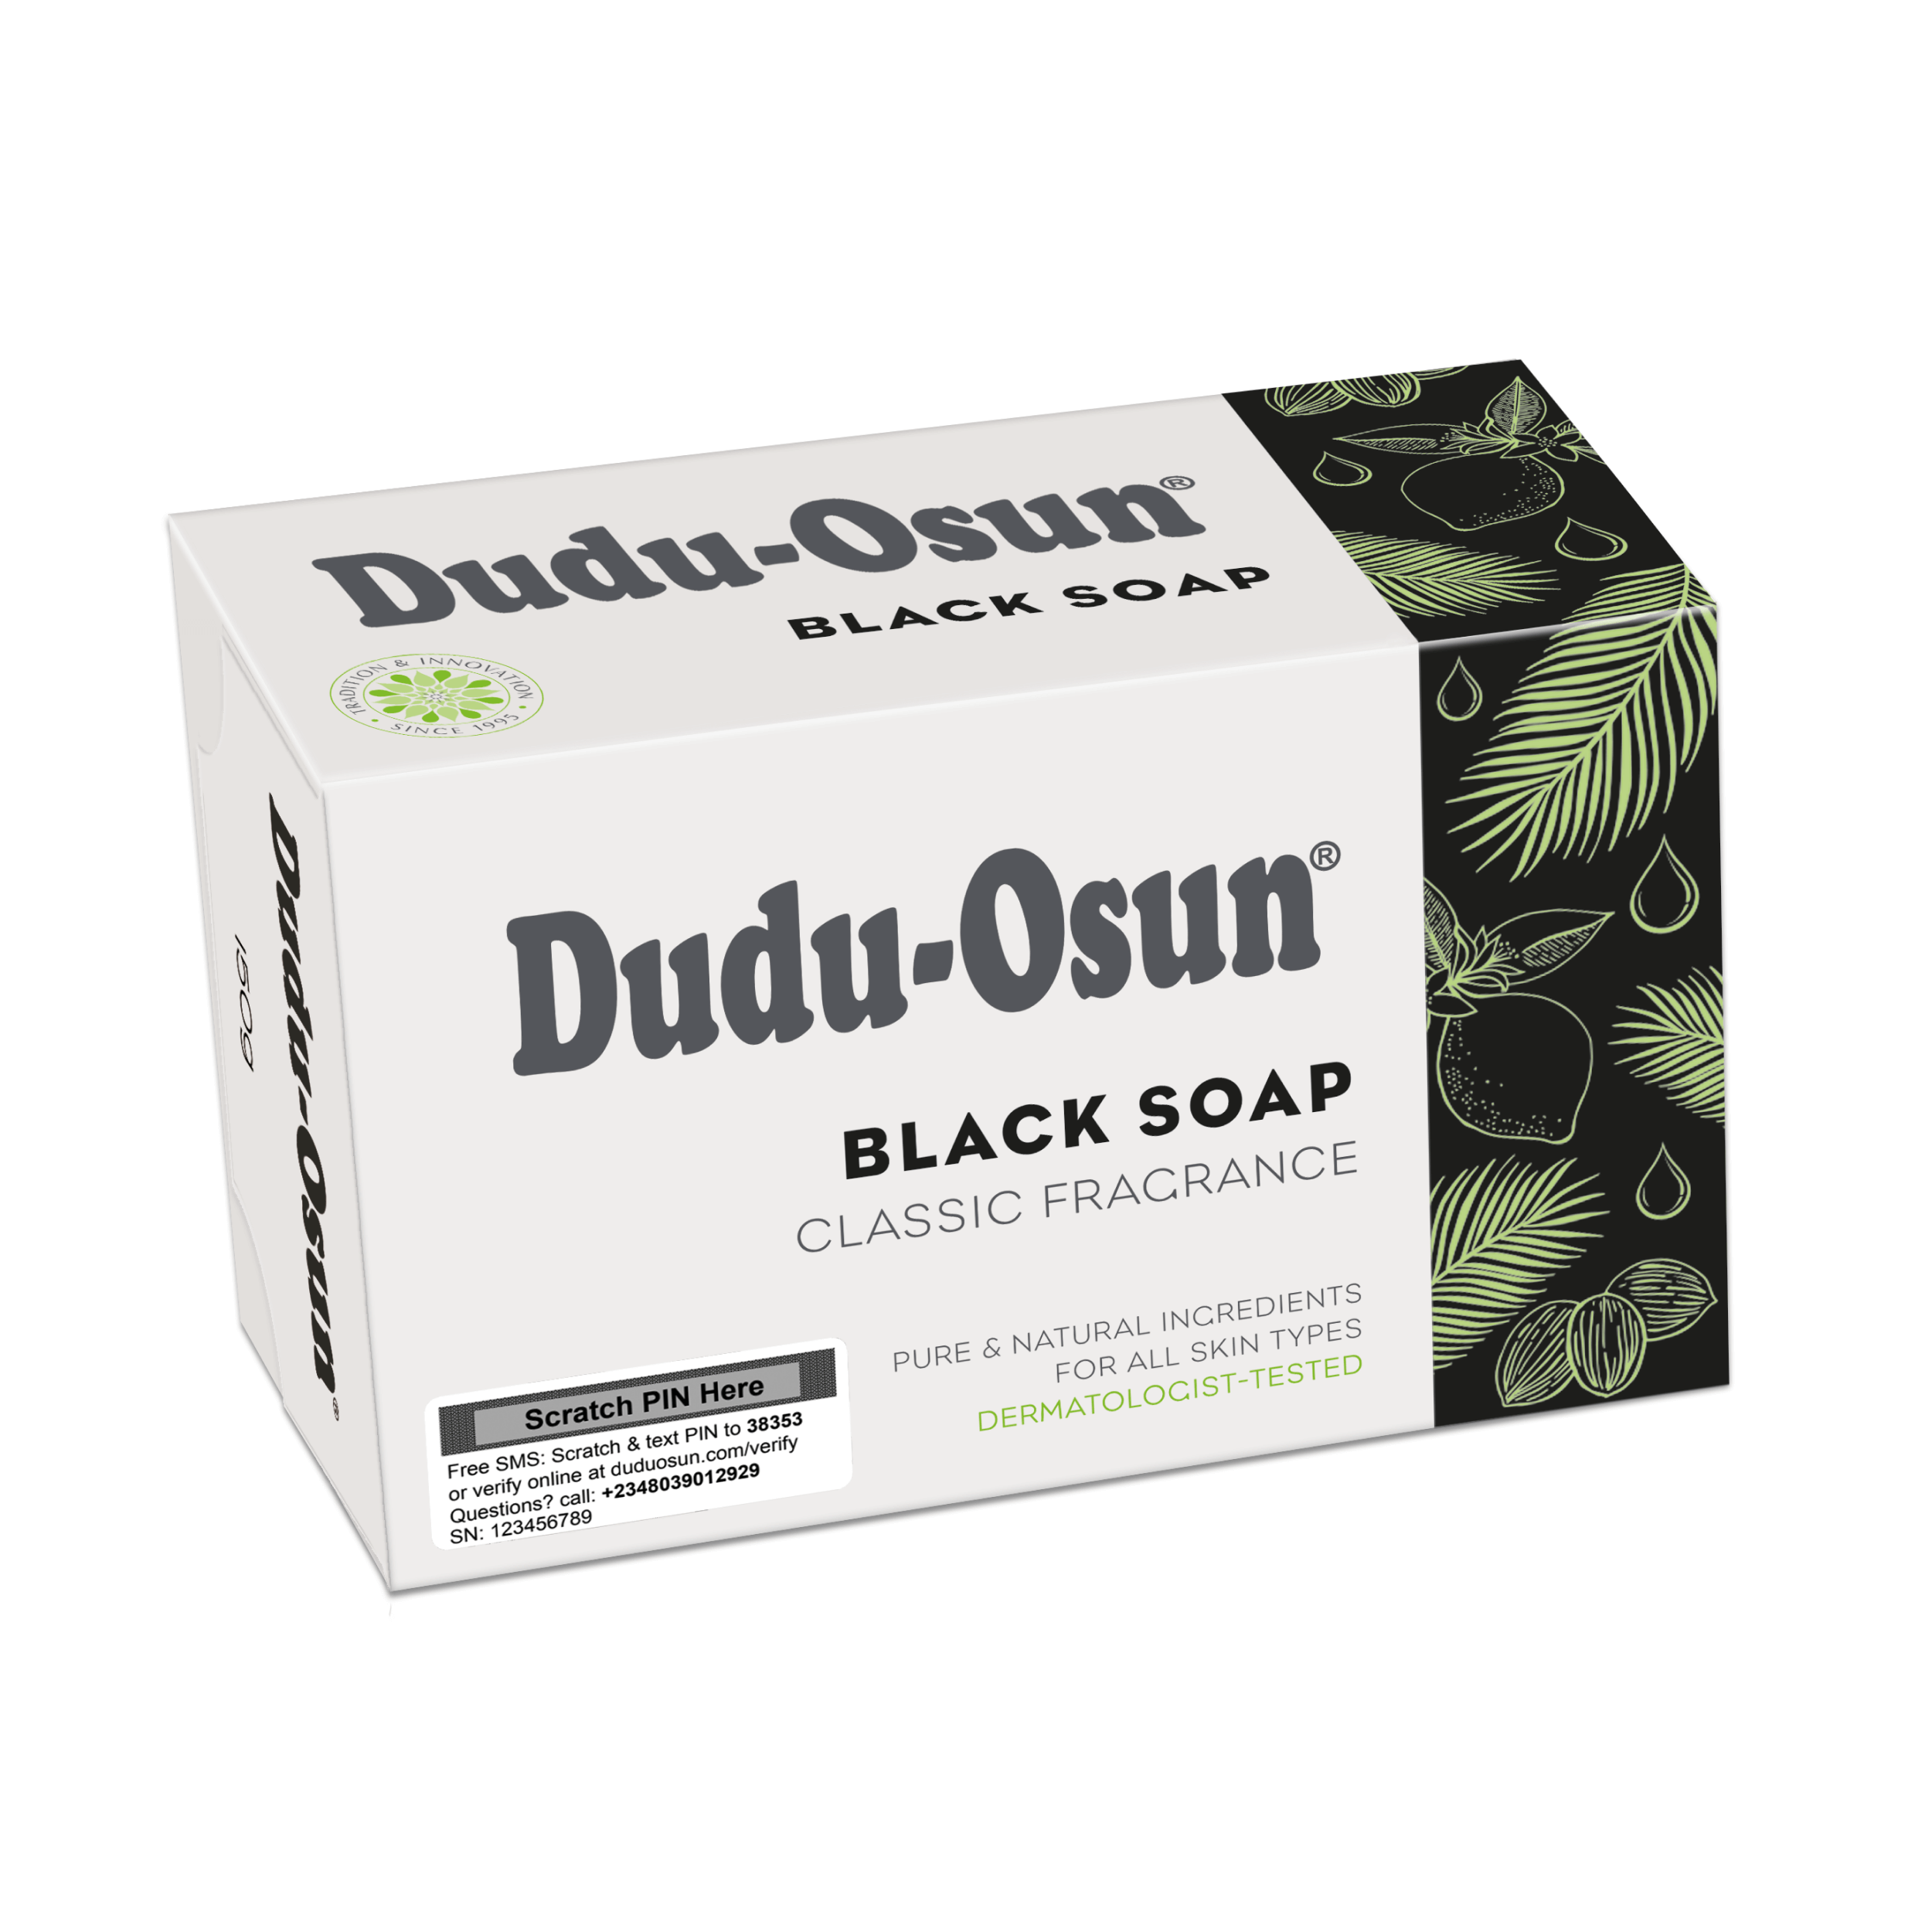 Czarne mydło afrykańskie klasyczne 150 g - Dudu-Osun